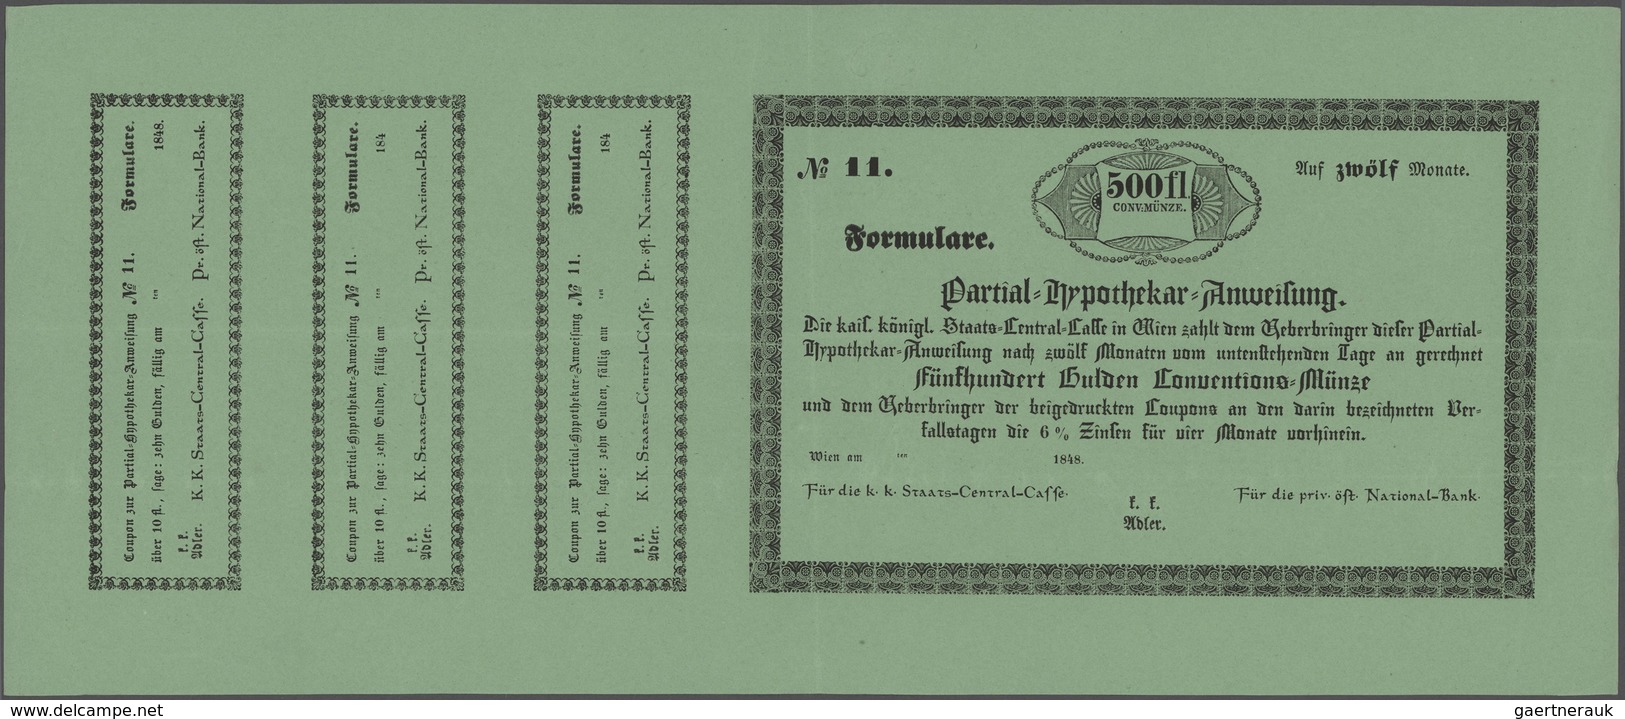 Austria / Österreich: Partial-Hypothekar-Anweisung, 500 Gulden 1848 Formular With 3 Cupons Of 10 Gul - Autriche